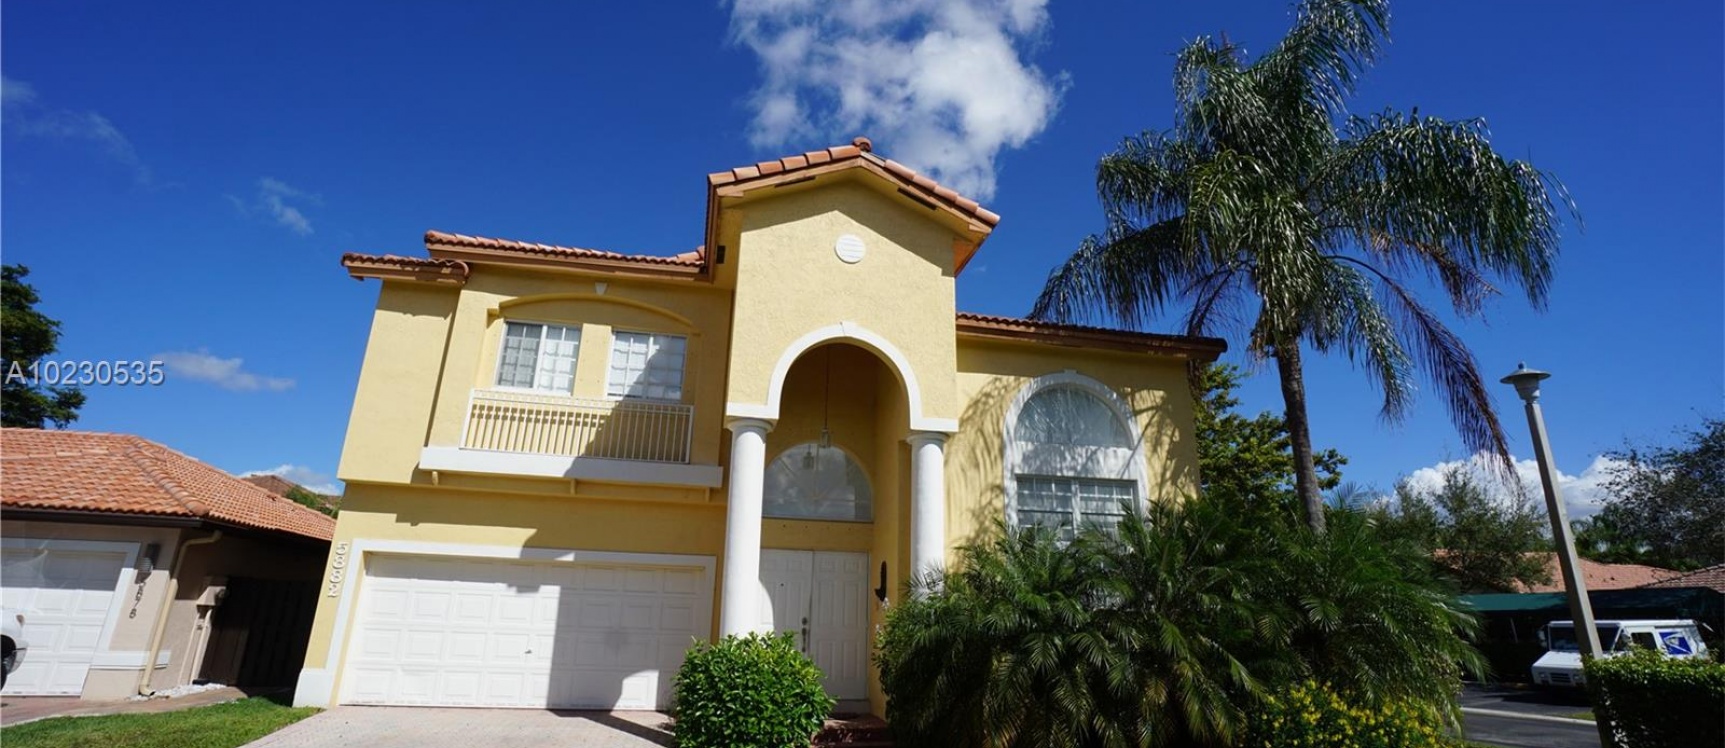 GeoBienes - Casa a la Venta en Miami - DORAL ISLES CAYMAN - Plusvalia Guayaquil Casas de venta y alquiler Inmobiliaria Ecuador